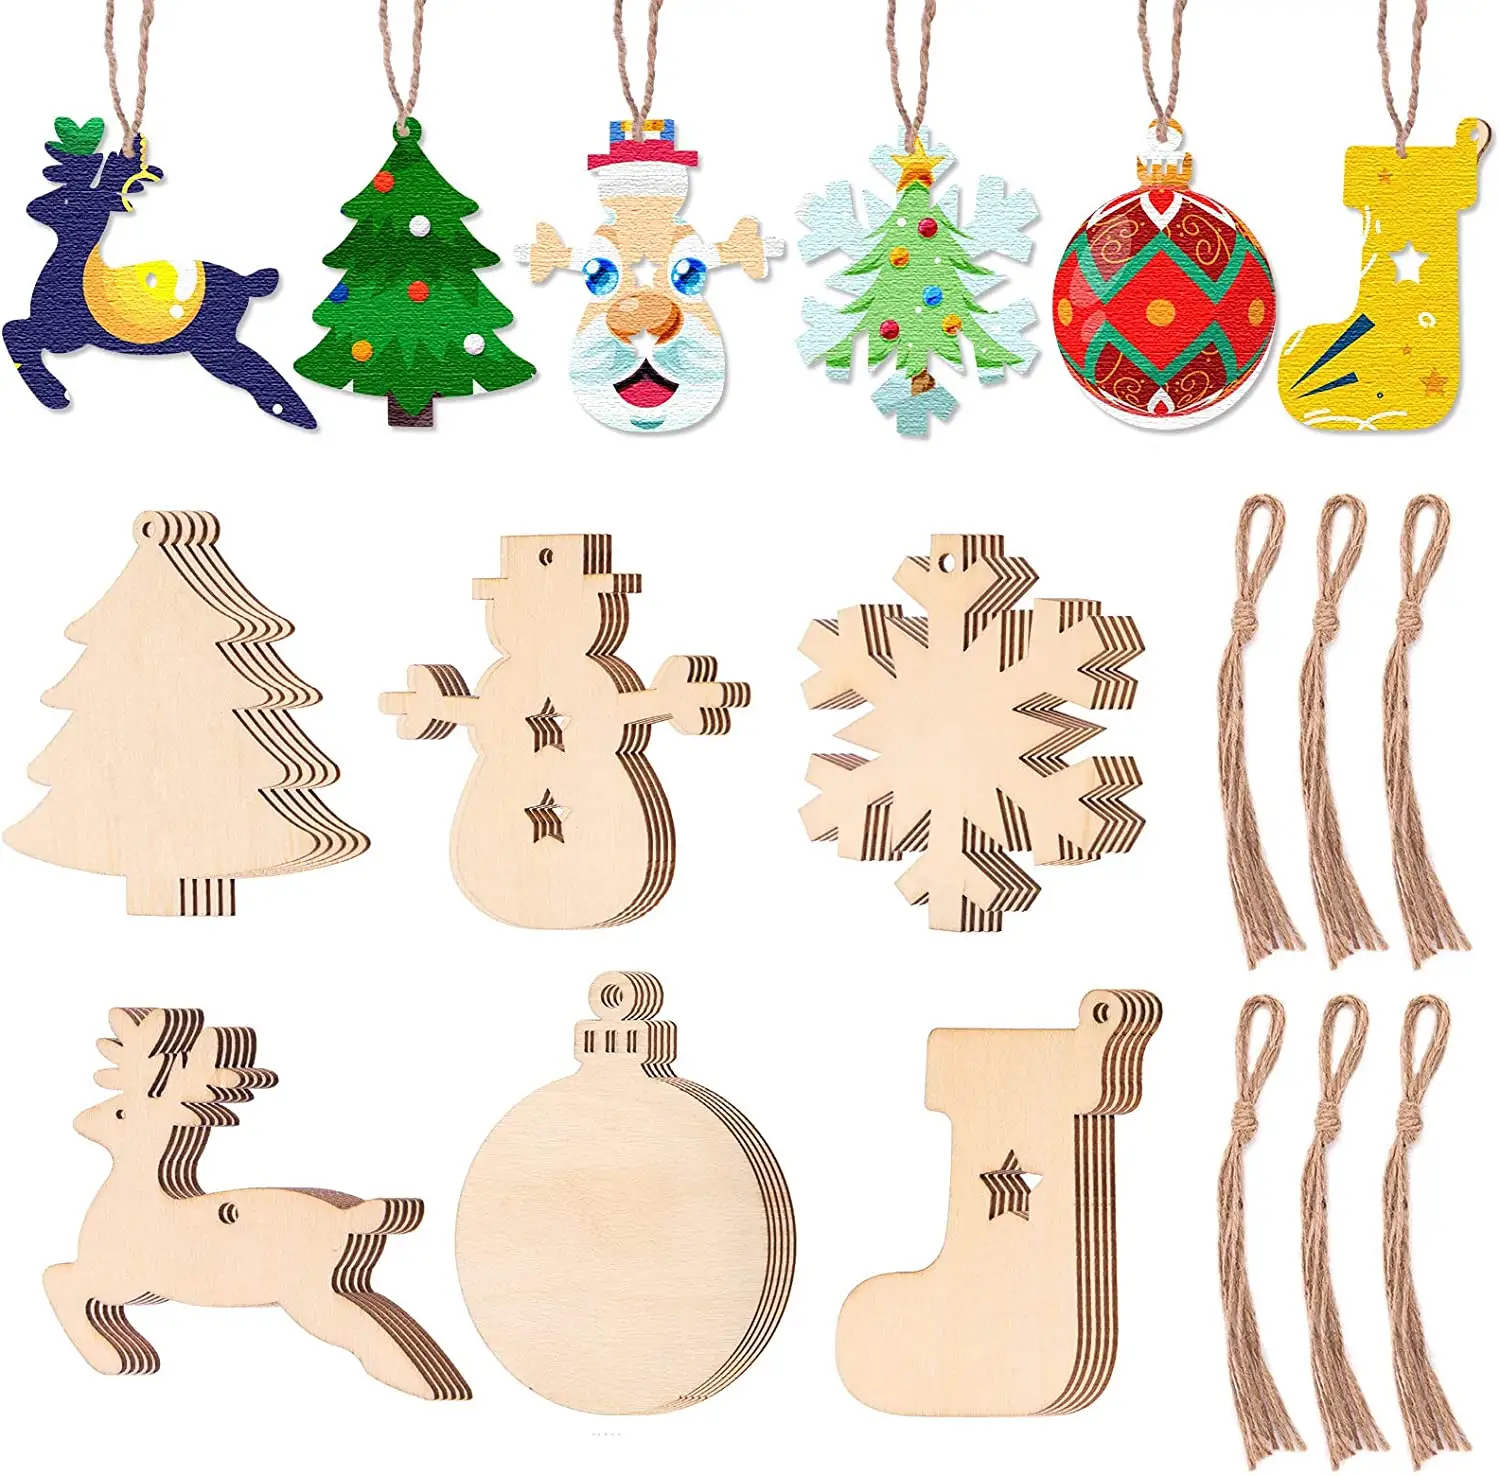 زينة عيد الميلاد, زينة عيد الميلاد مصنوعة من الخشب اللامع لتزيين عيد الميلاد والعطلات وتعليق الزينة